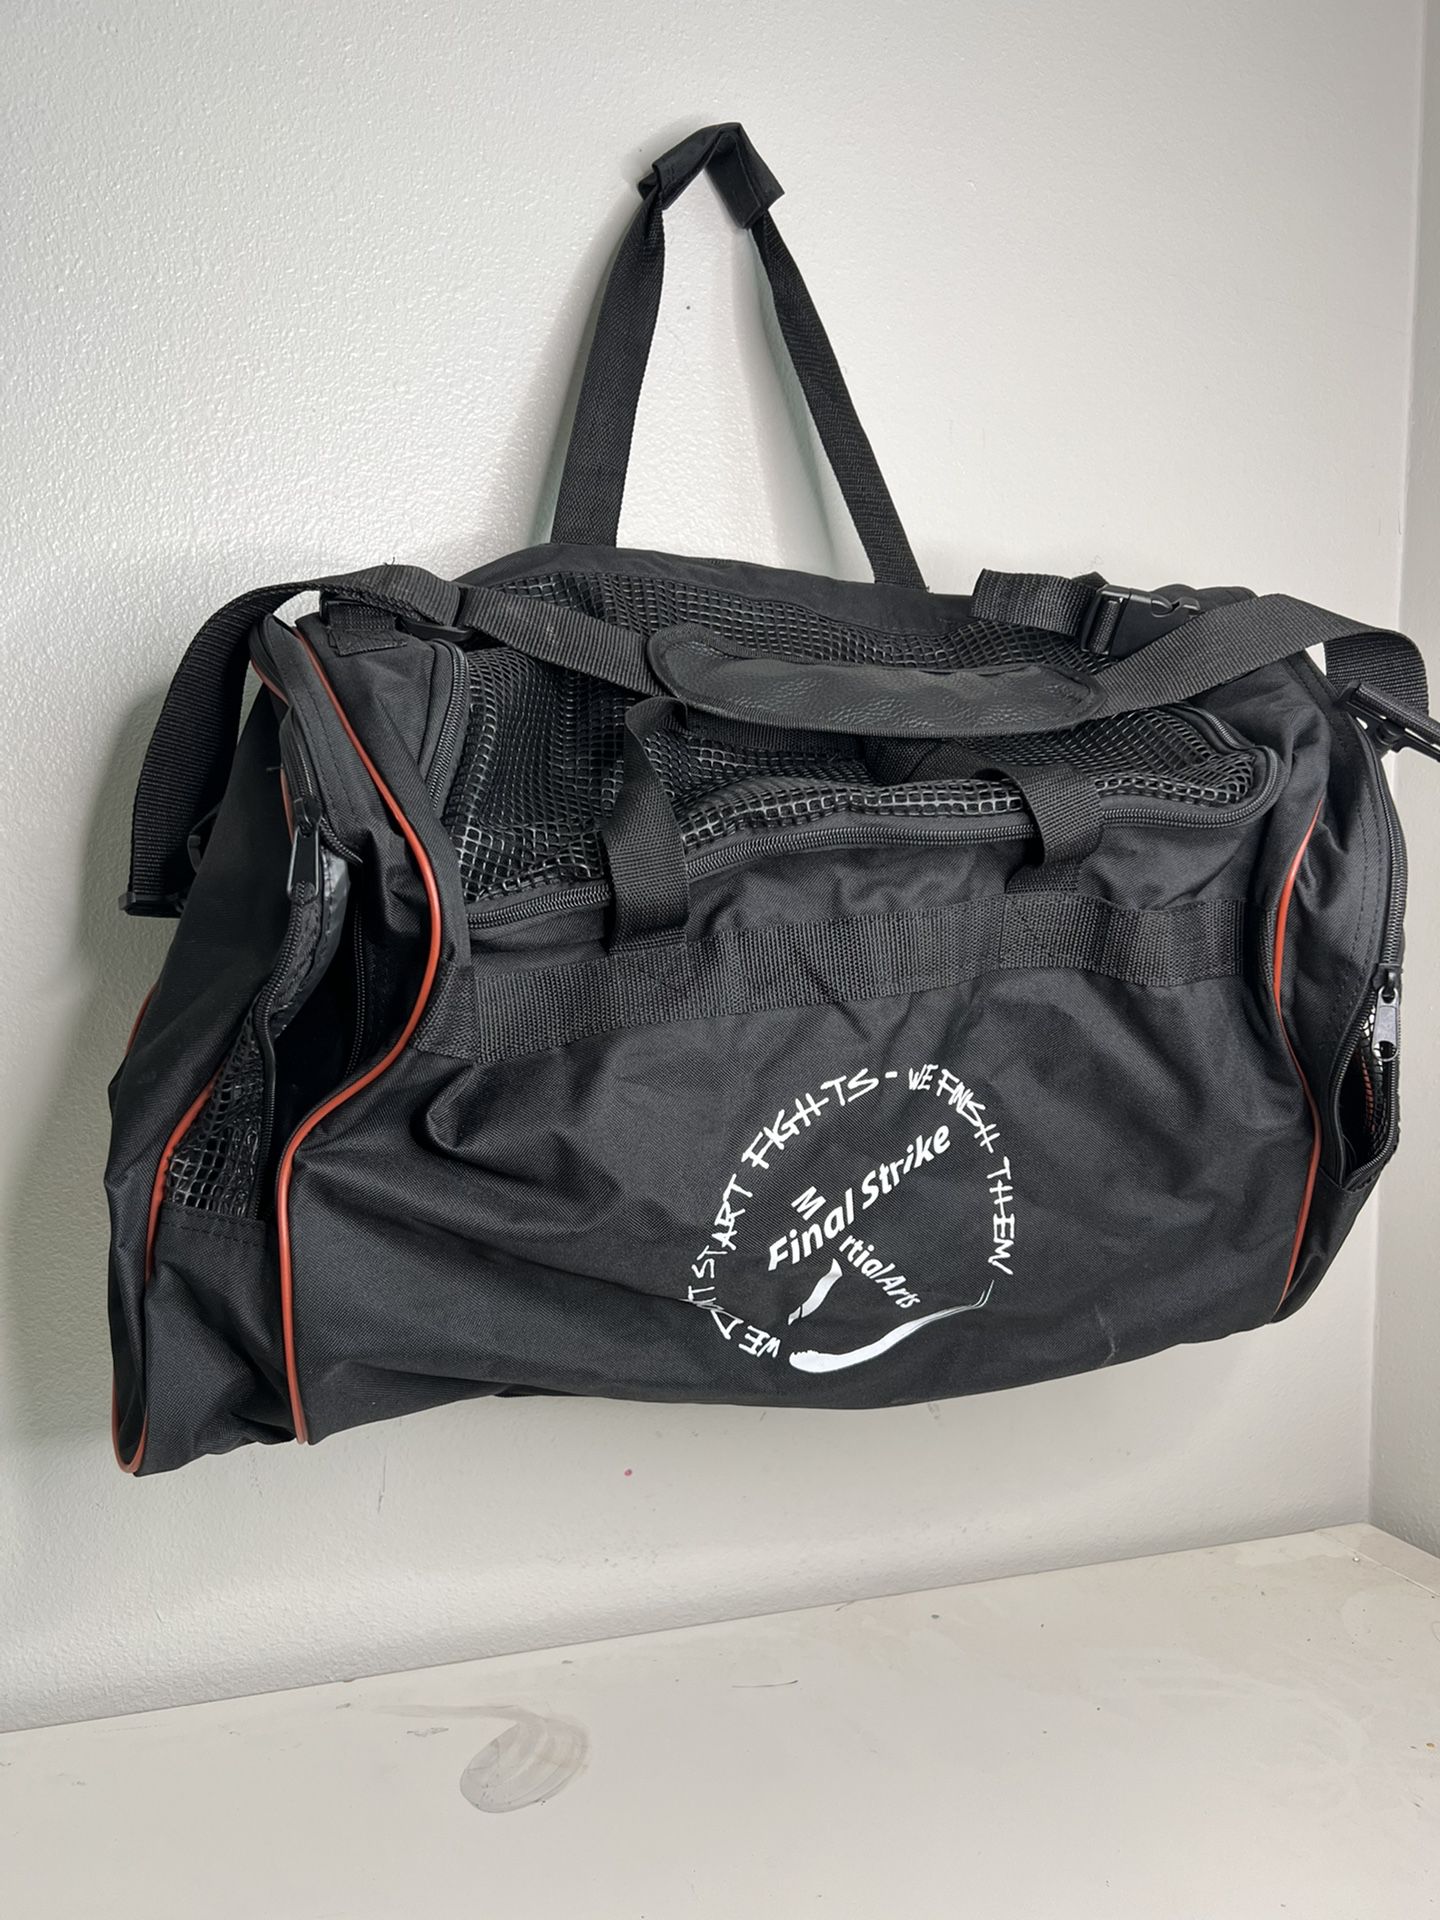 Martial Arts Duffle Bag